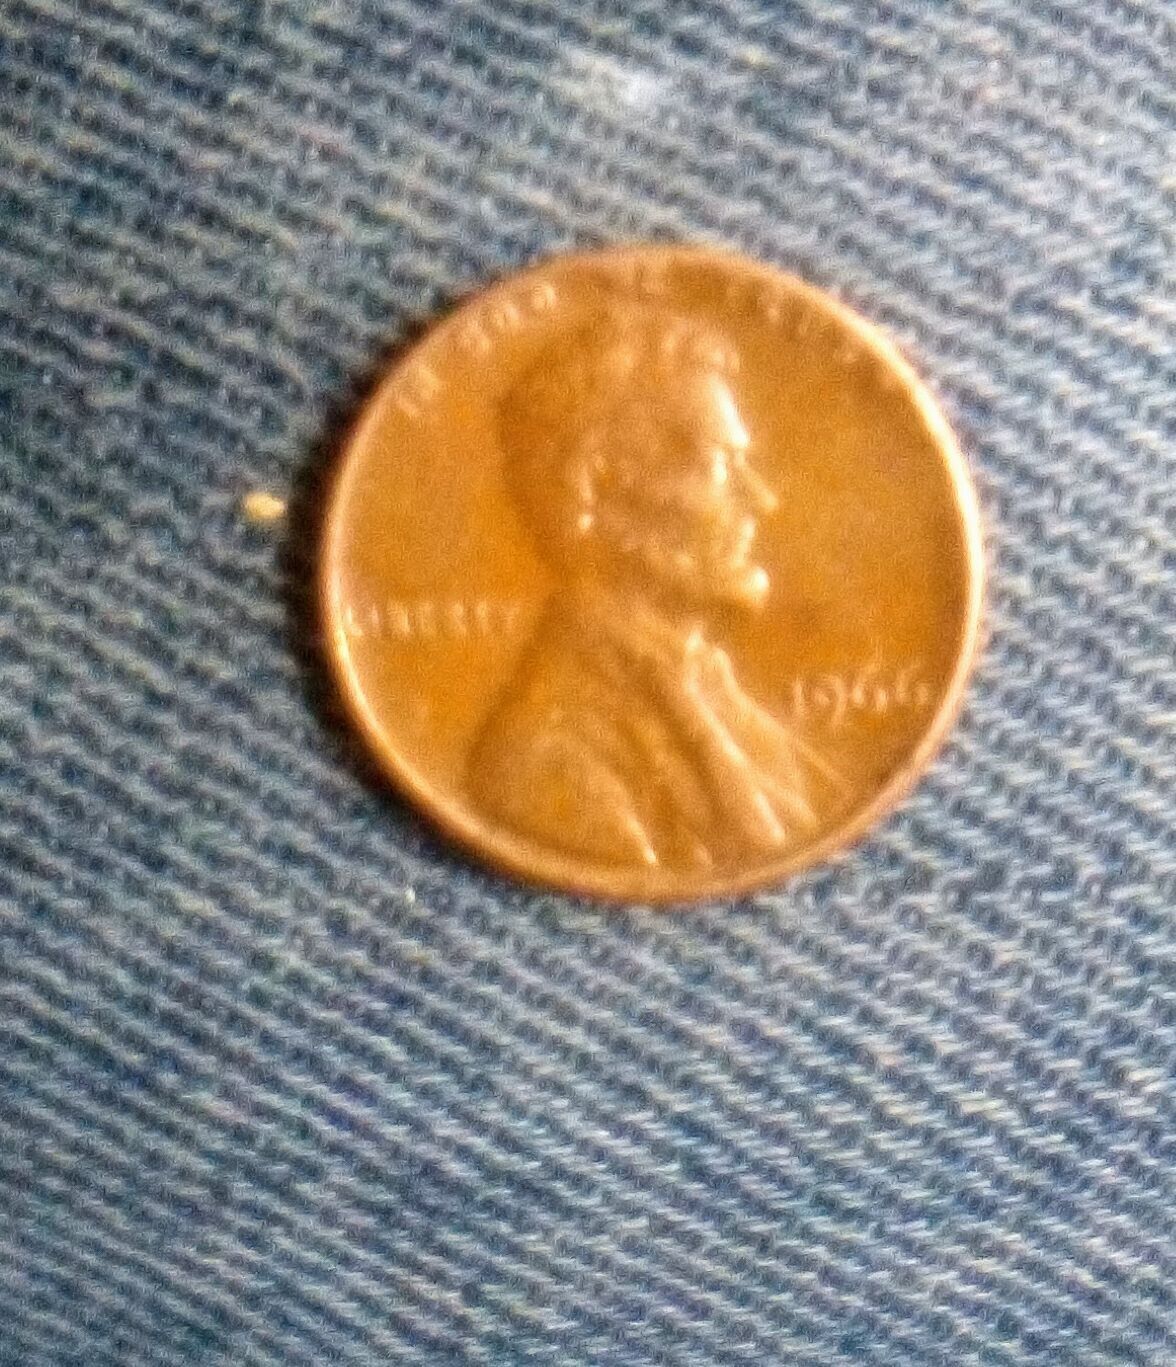 Rare 1966 Lincoln Penny  No Mint Mark.L, RIM ERROR, W ERROR very good condition